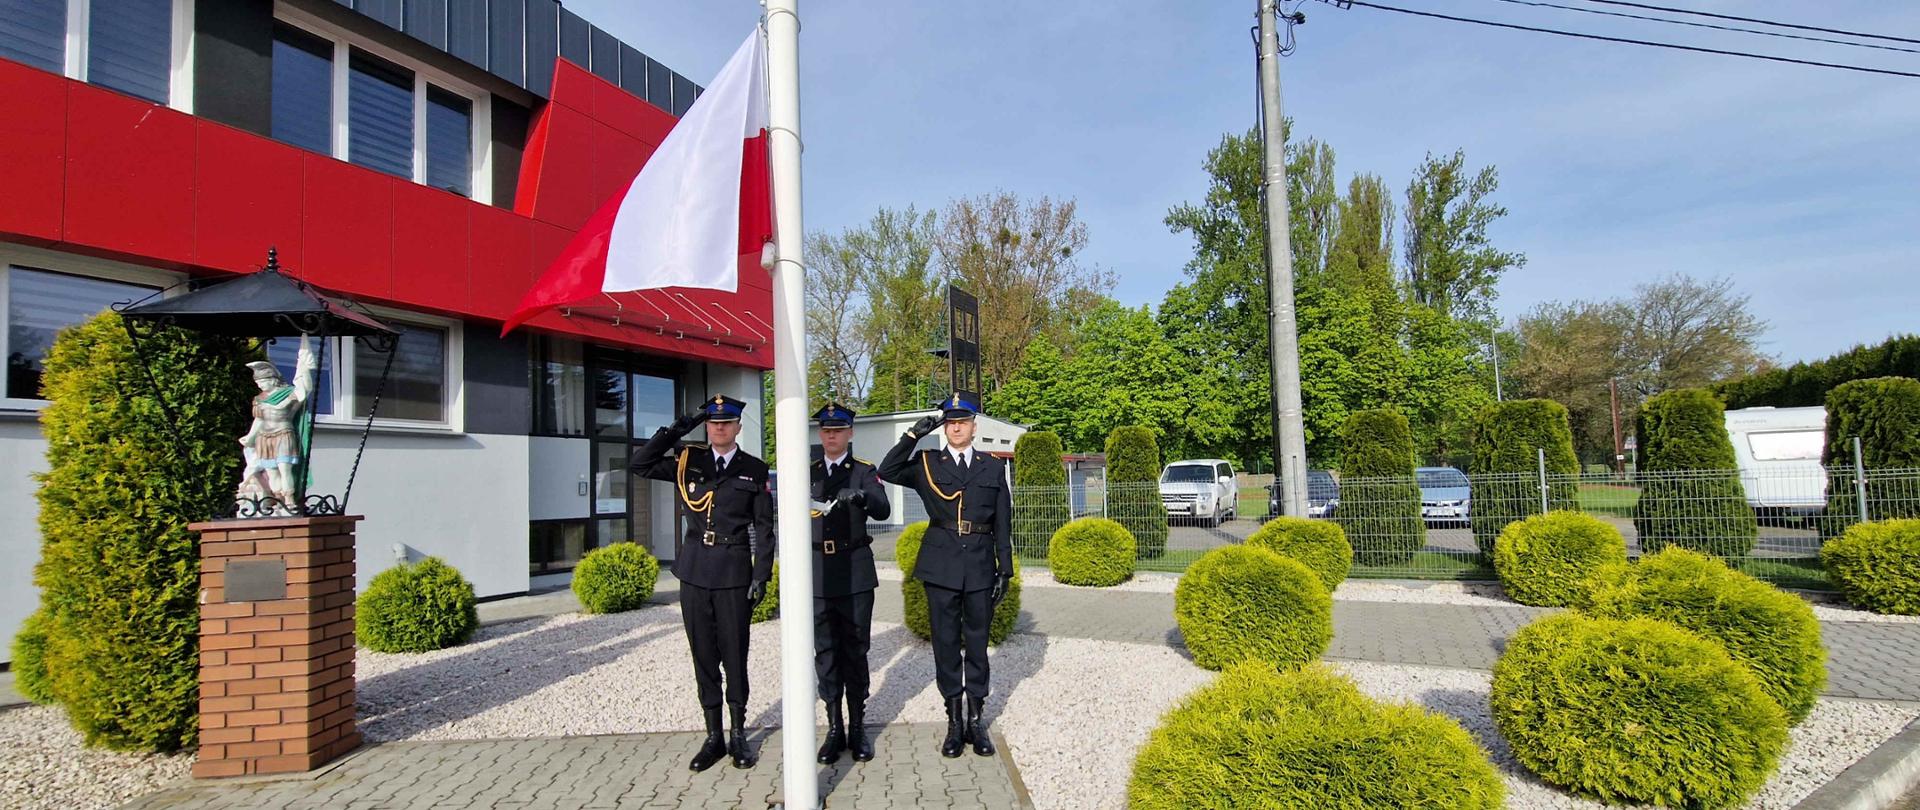 Na zdjęciu widzimy poczet flagowy KP PSP Sandomierz podnoszący flagę państwową na maszt.